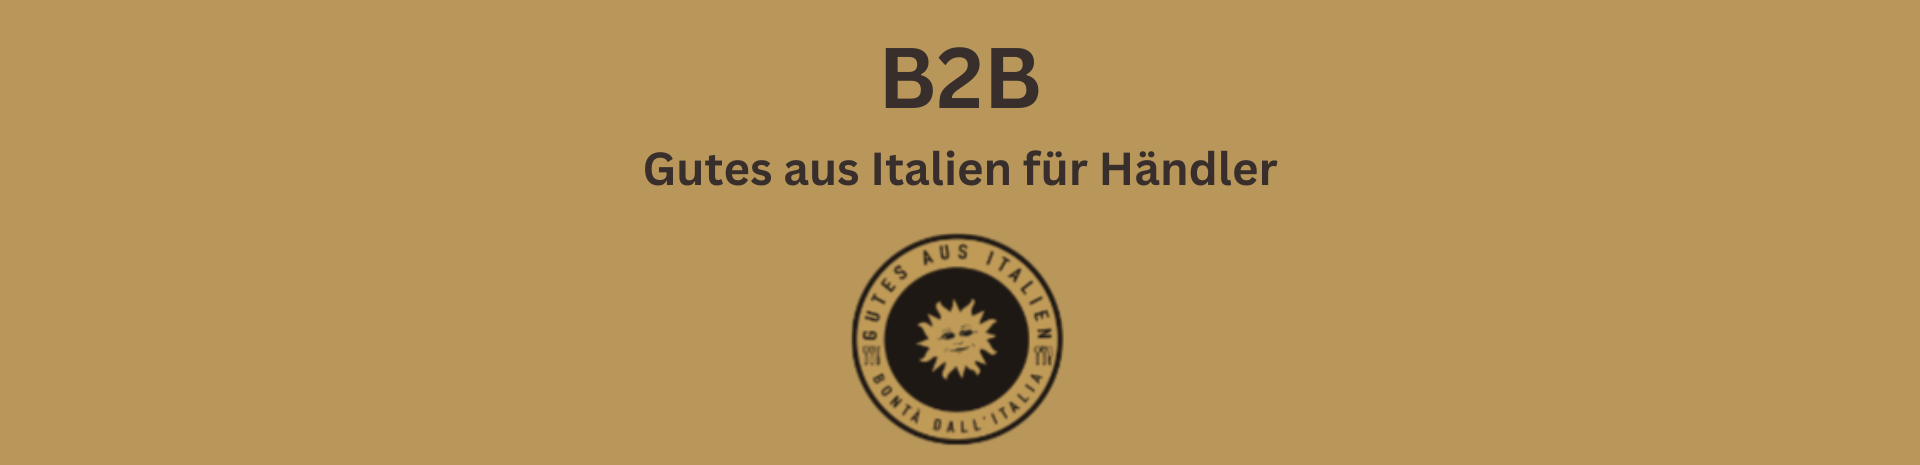 B2B - Gutes aus Italien für Händler